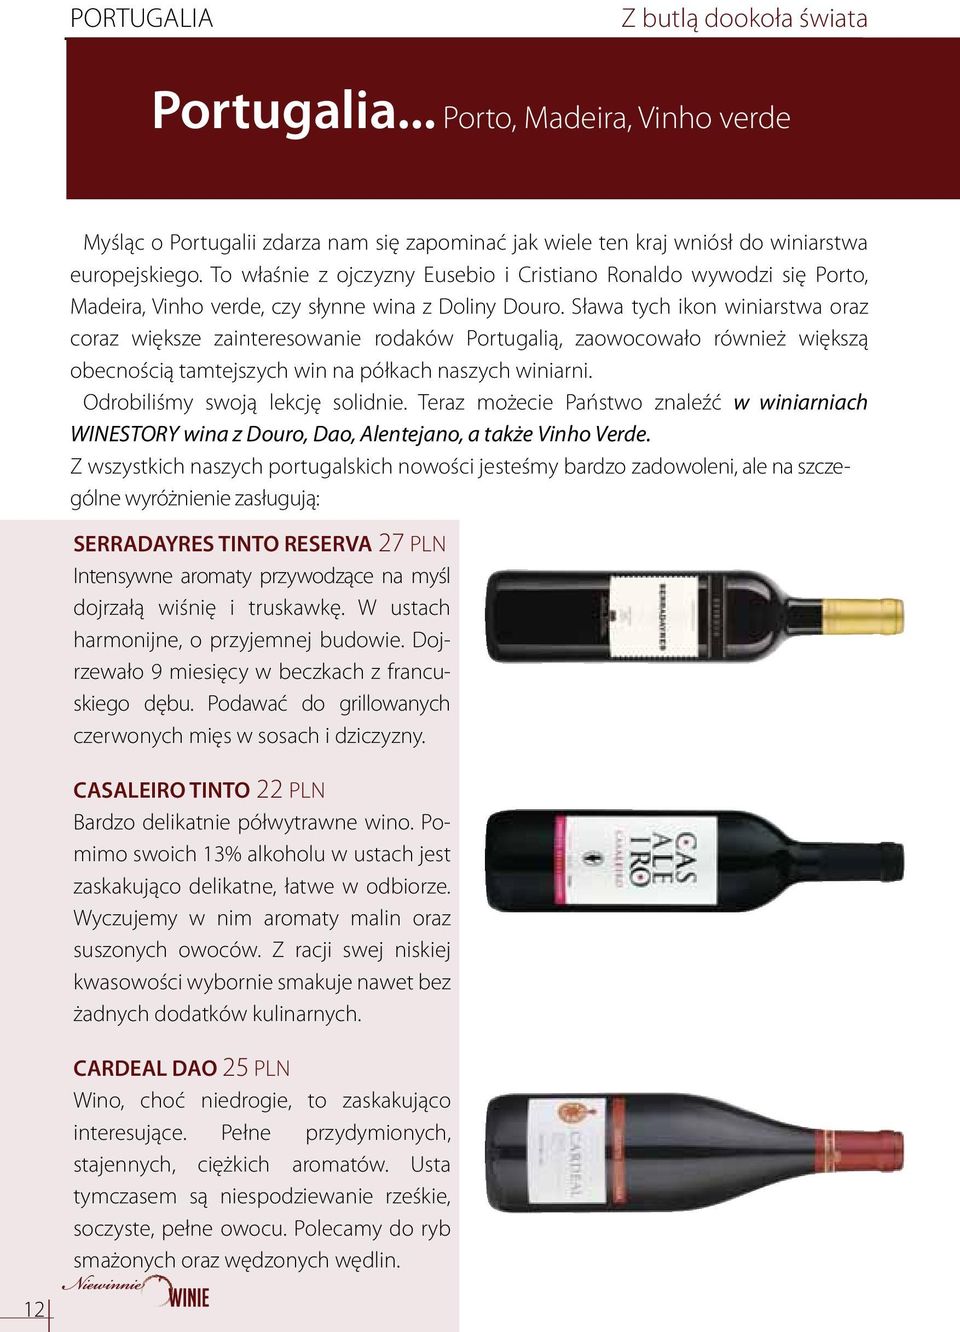 Sława tych ikon winiarstwa oraz coraz większe zainteresowanie rodaków Portugalią, zaowocowało również większą obecnością tamtejszych win na półkach naszych winiarni. Odrobiliśmy swoją lekcję solidnie.